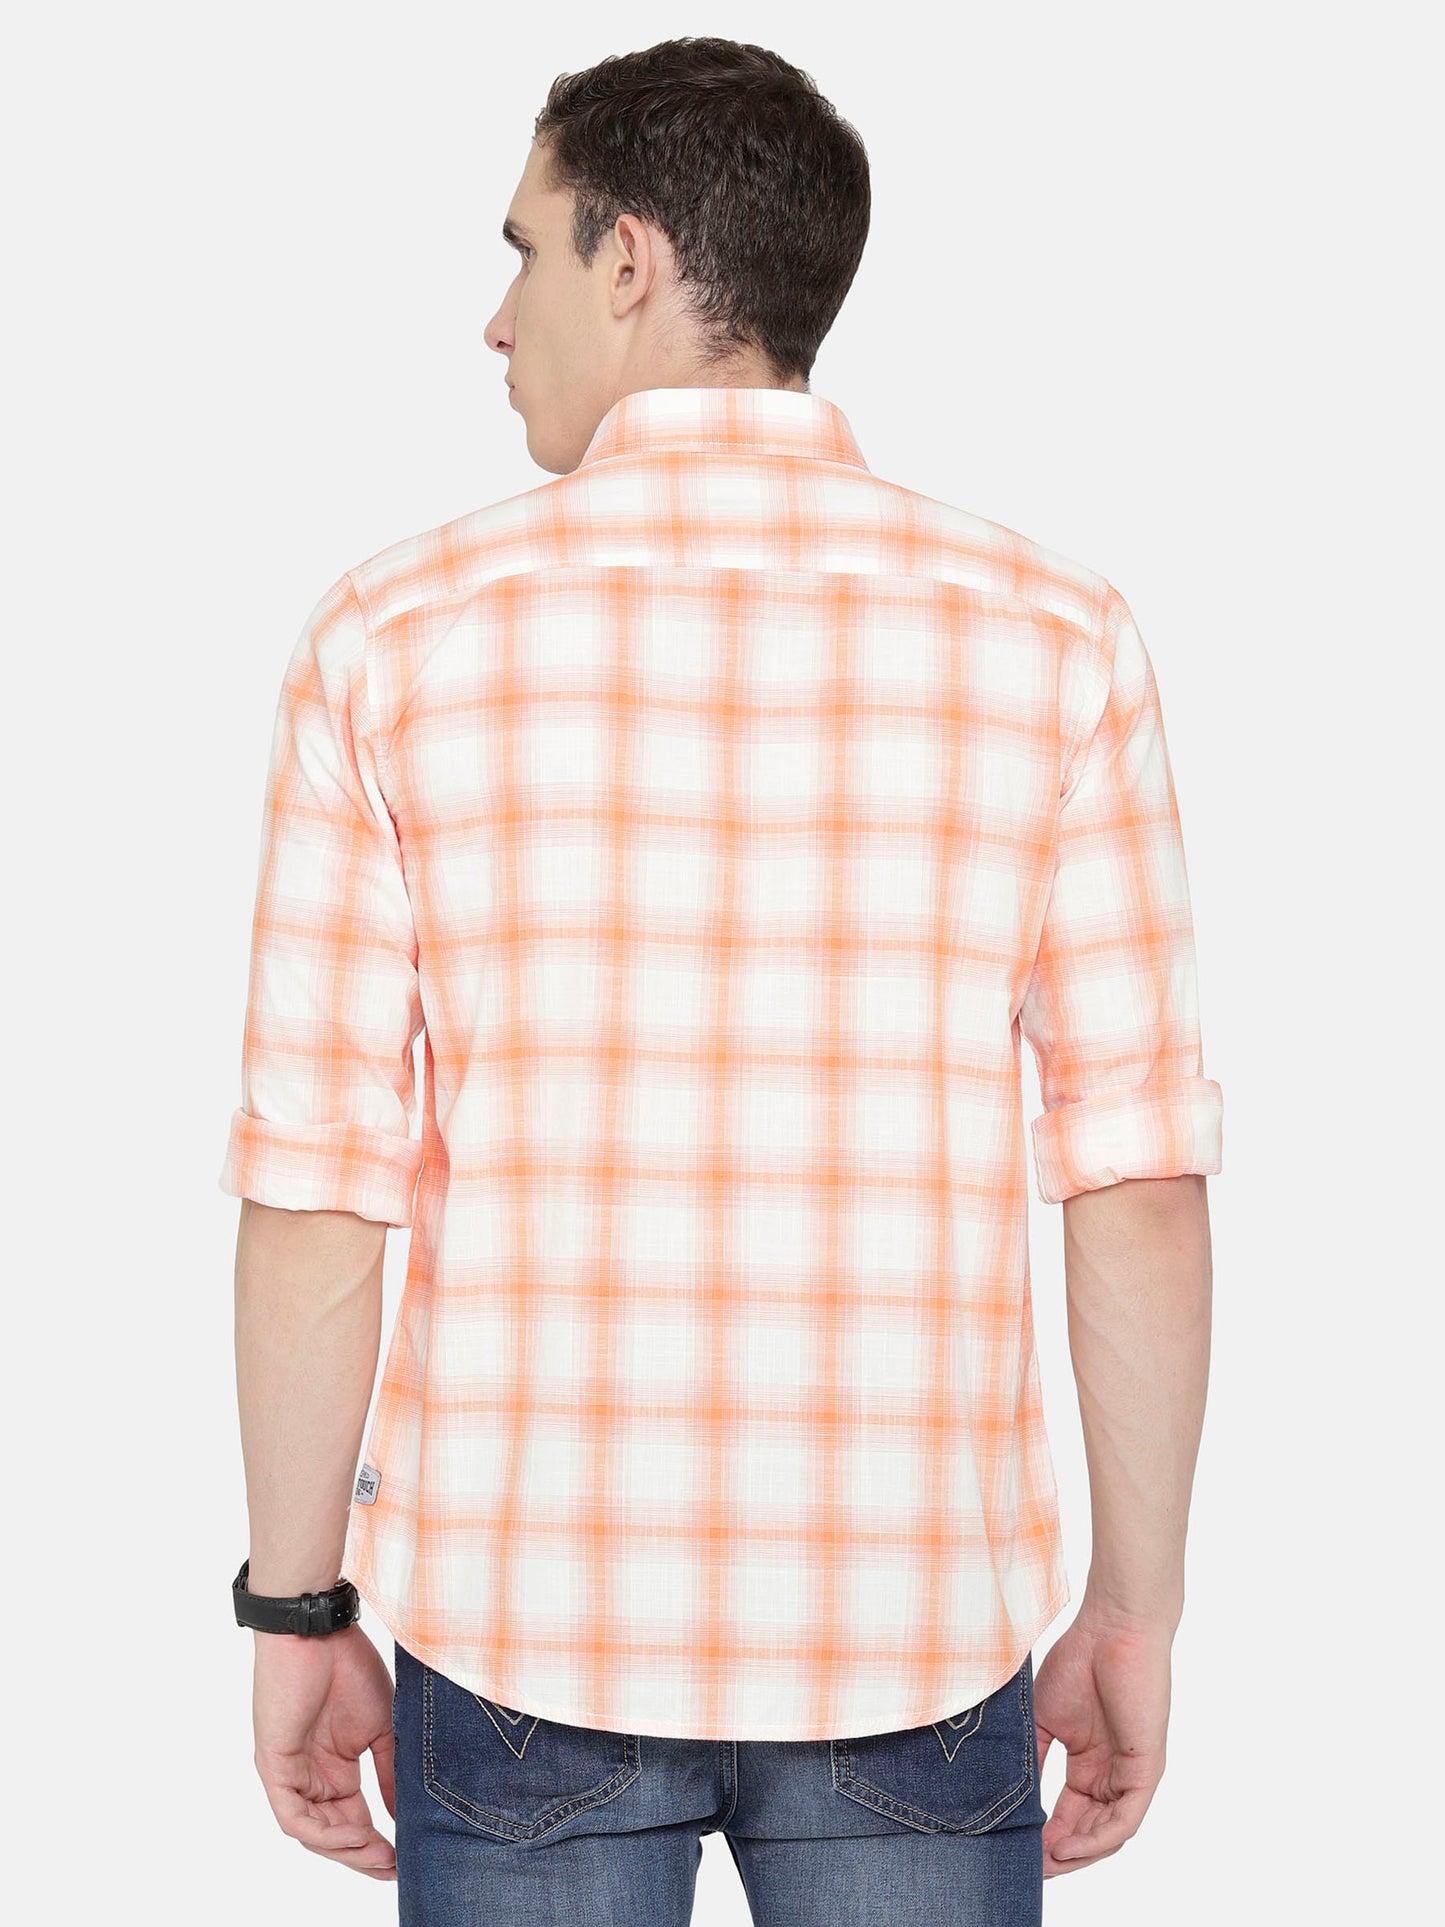 White and Orange Checkered Shirt